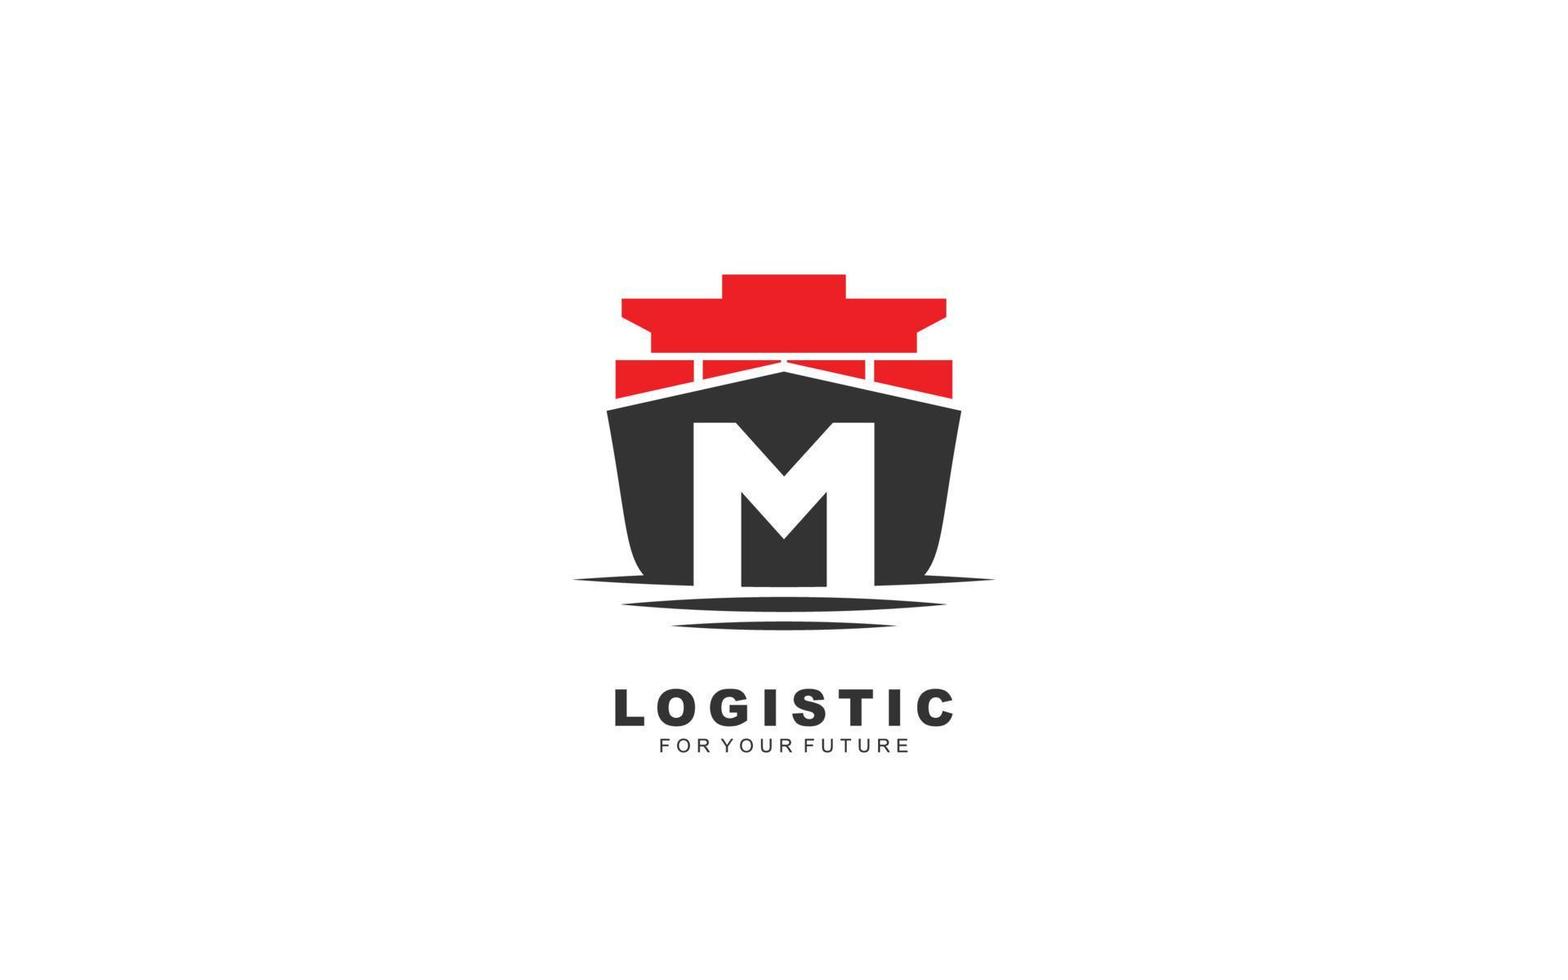 m logo logistic para empresa de marca. ilustración de vector de plantilla de envío para su marca.